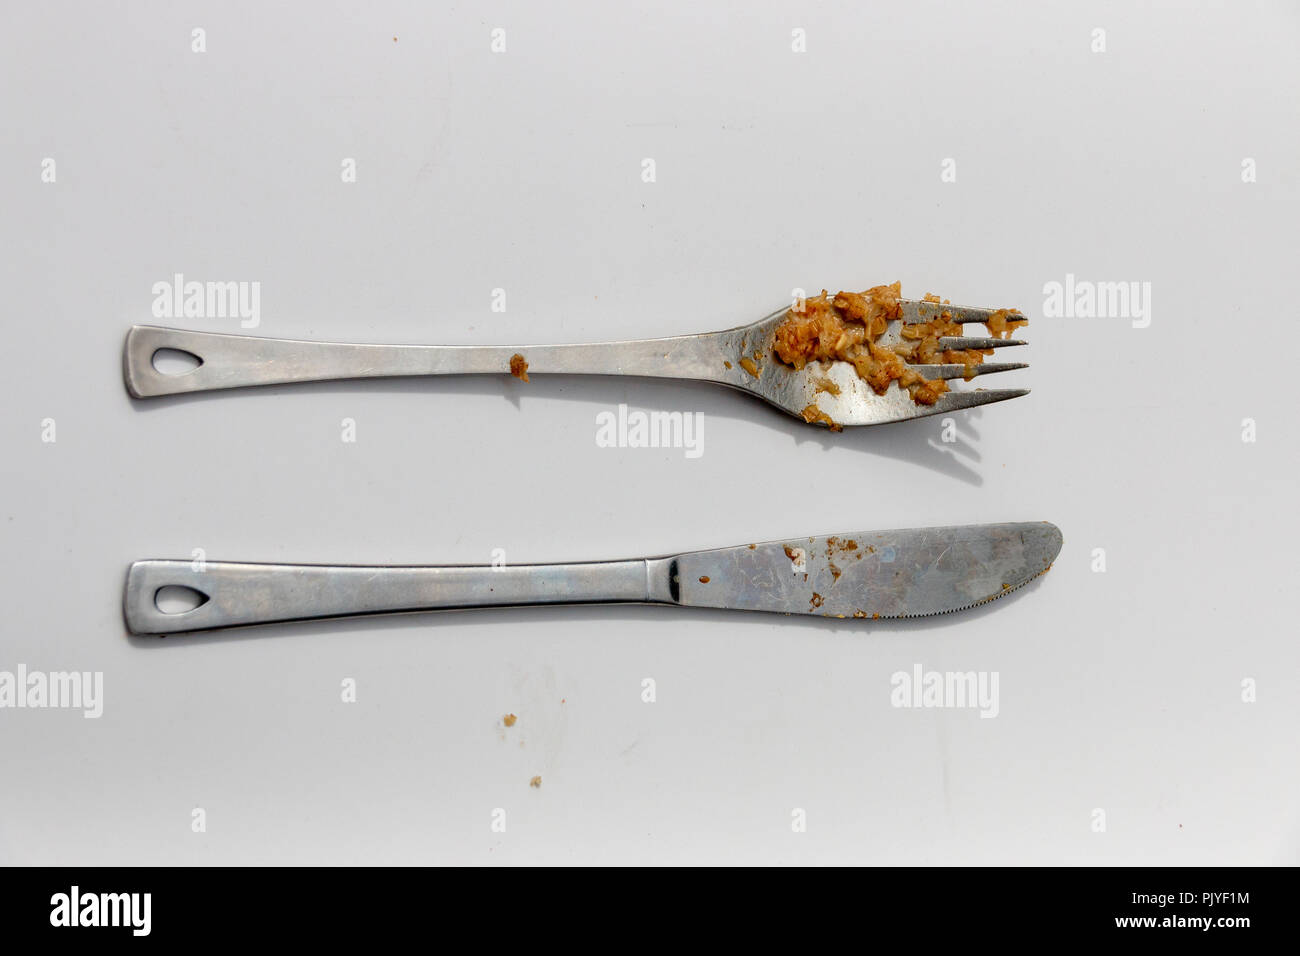 Una vista de cerca de cuchillo y tenedor de plata adirty uno junto al otro en un fondo blanco aislado Foto de stock